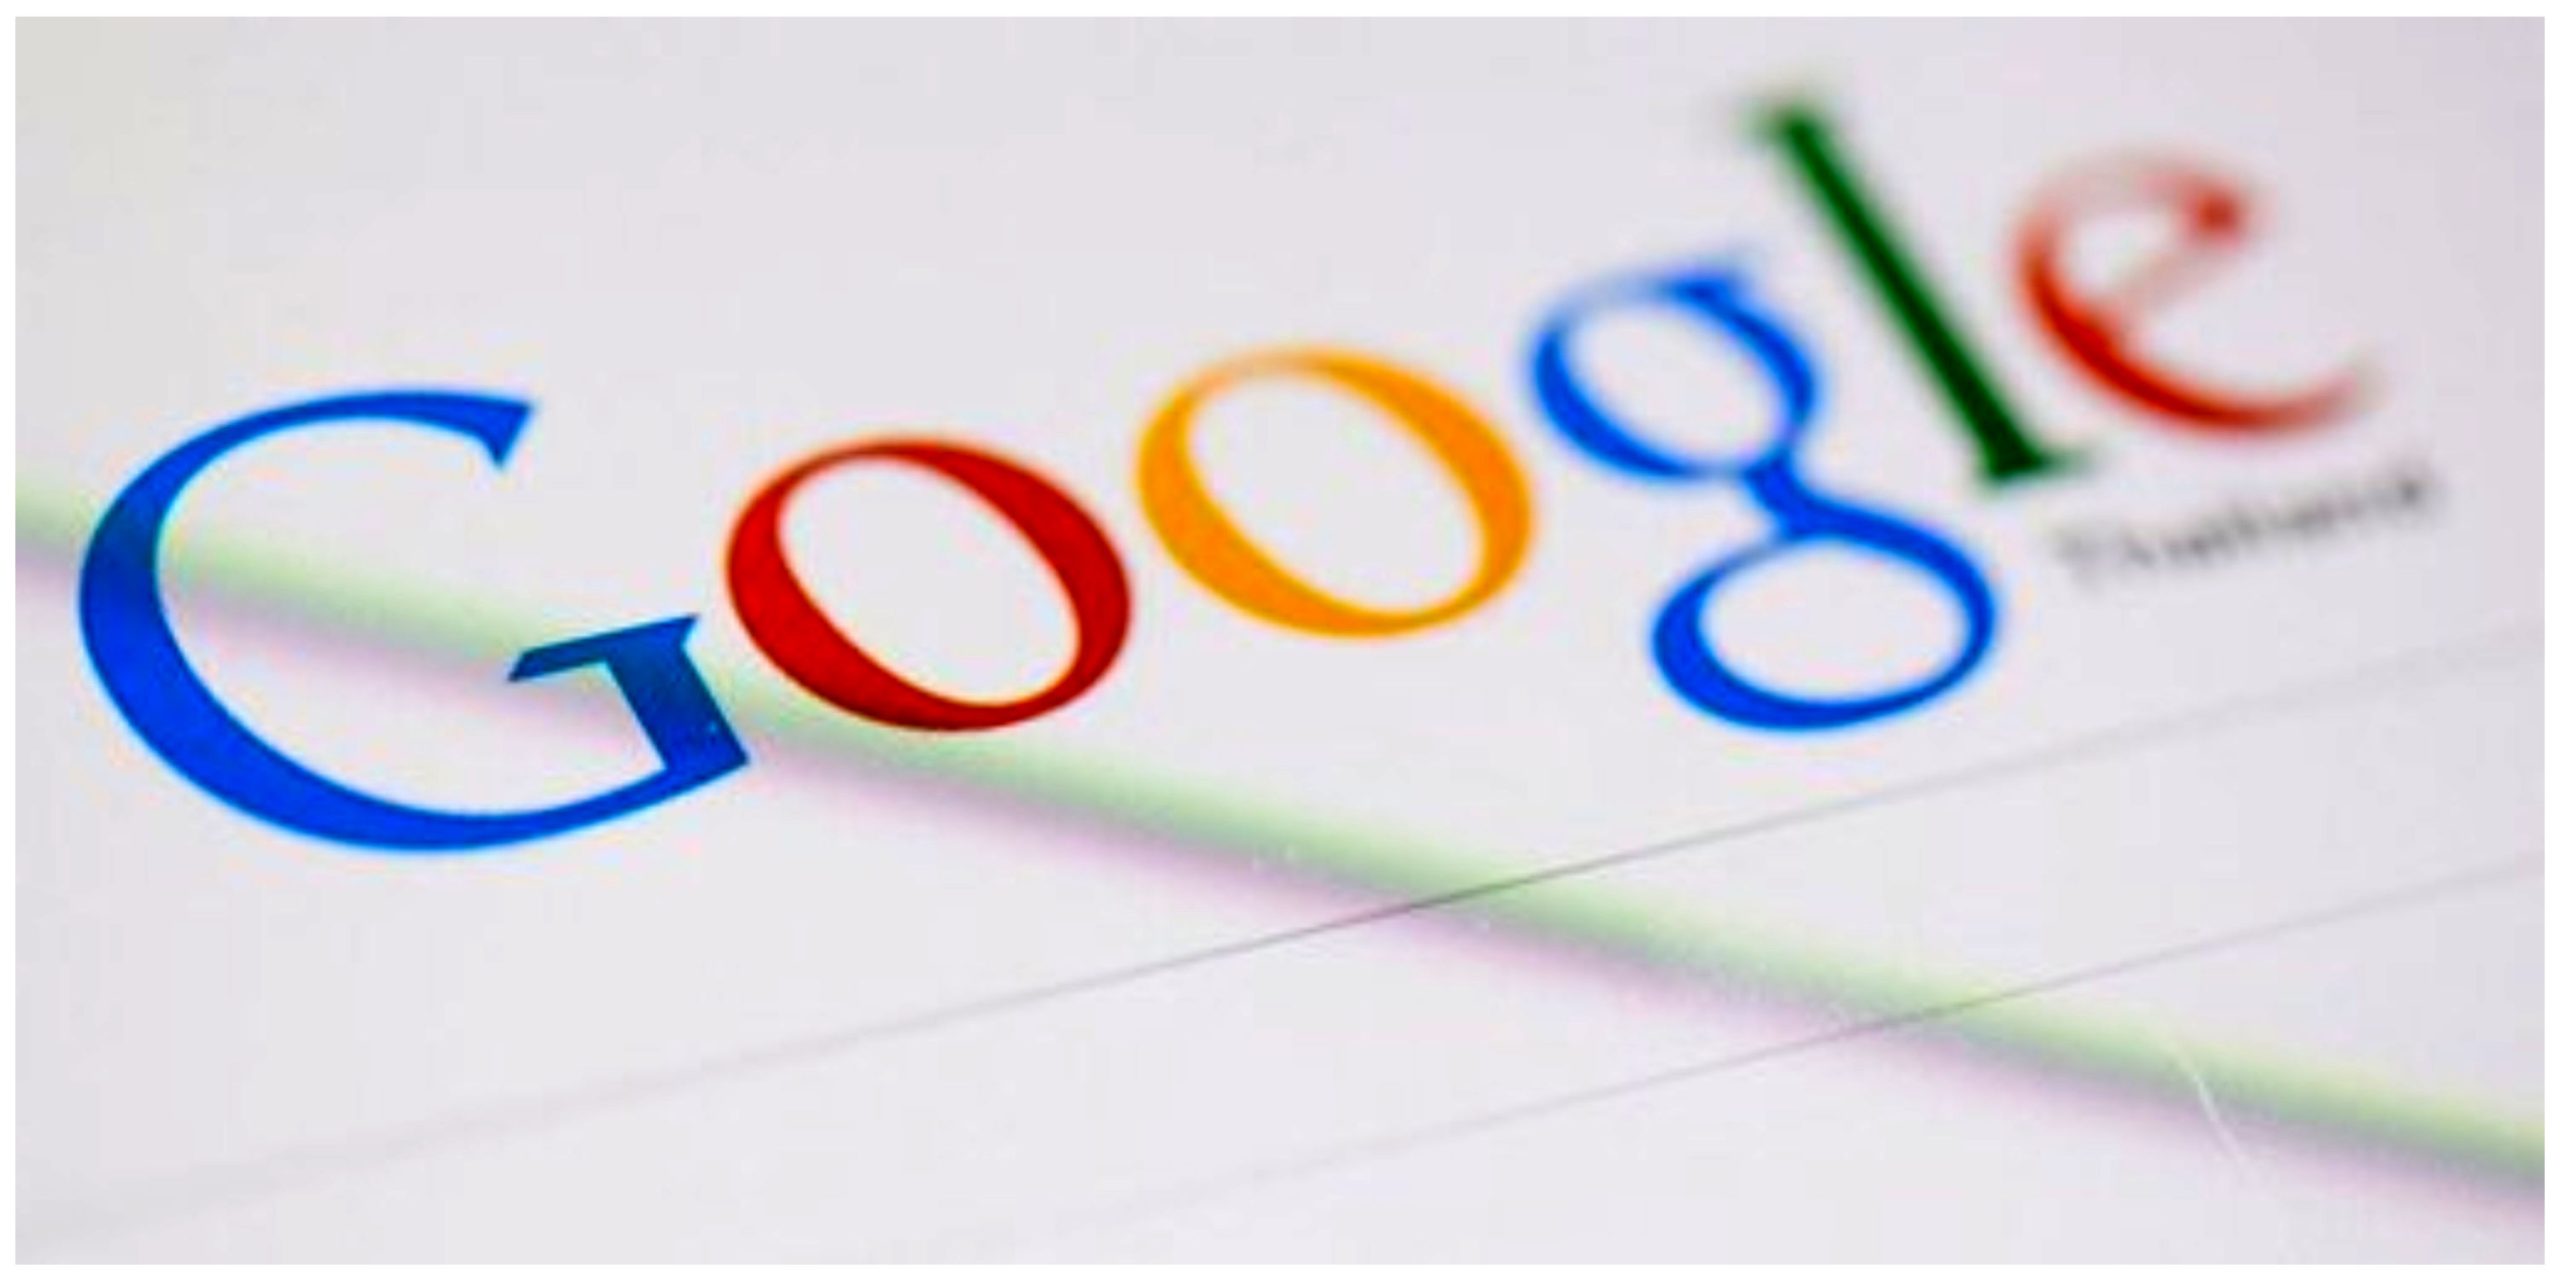 سهم بلامنازع گوگل در بازار جستجوی جهانی/ بینگ مایکروسافت و یاهو در رتبه های بعد